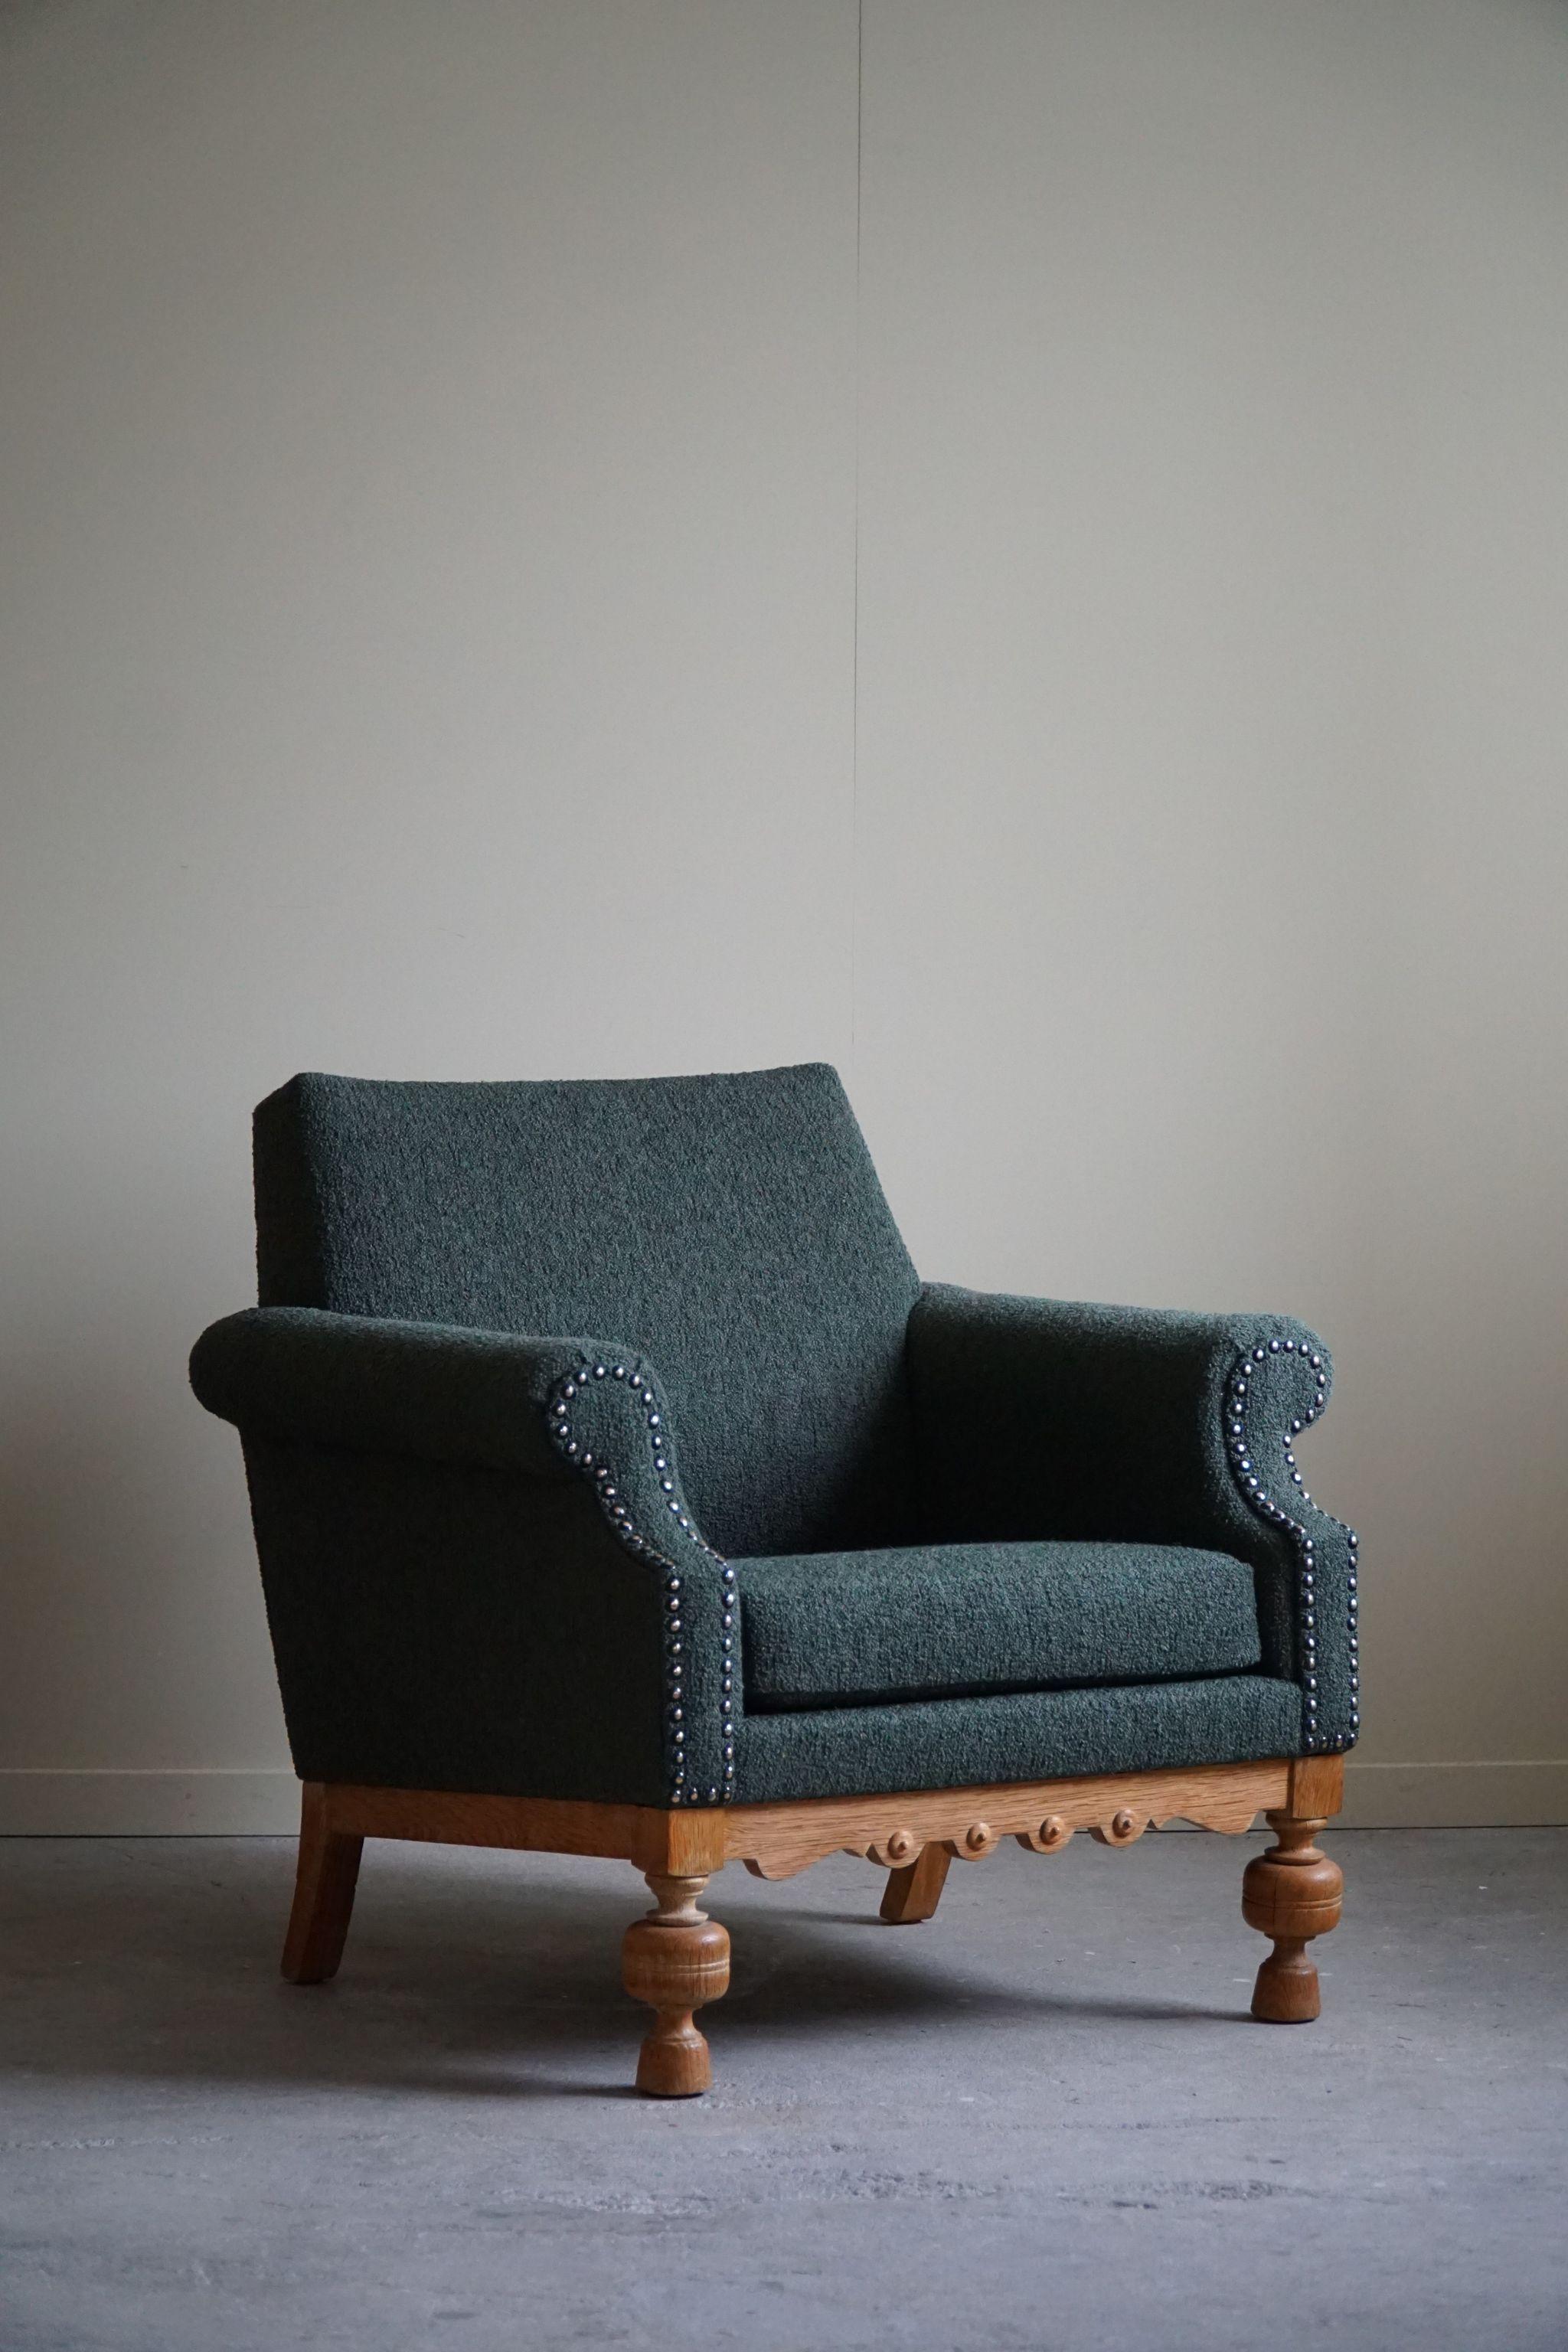 Lounge Chair in Oak & Green Bouclé, Danish Mid-Century Modern, 1950s For Sale 4